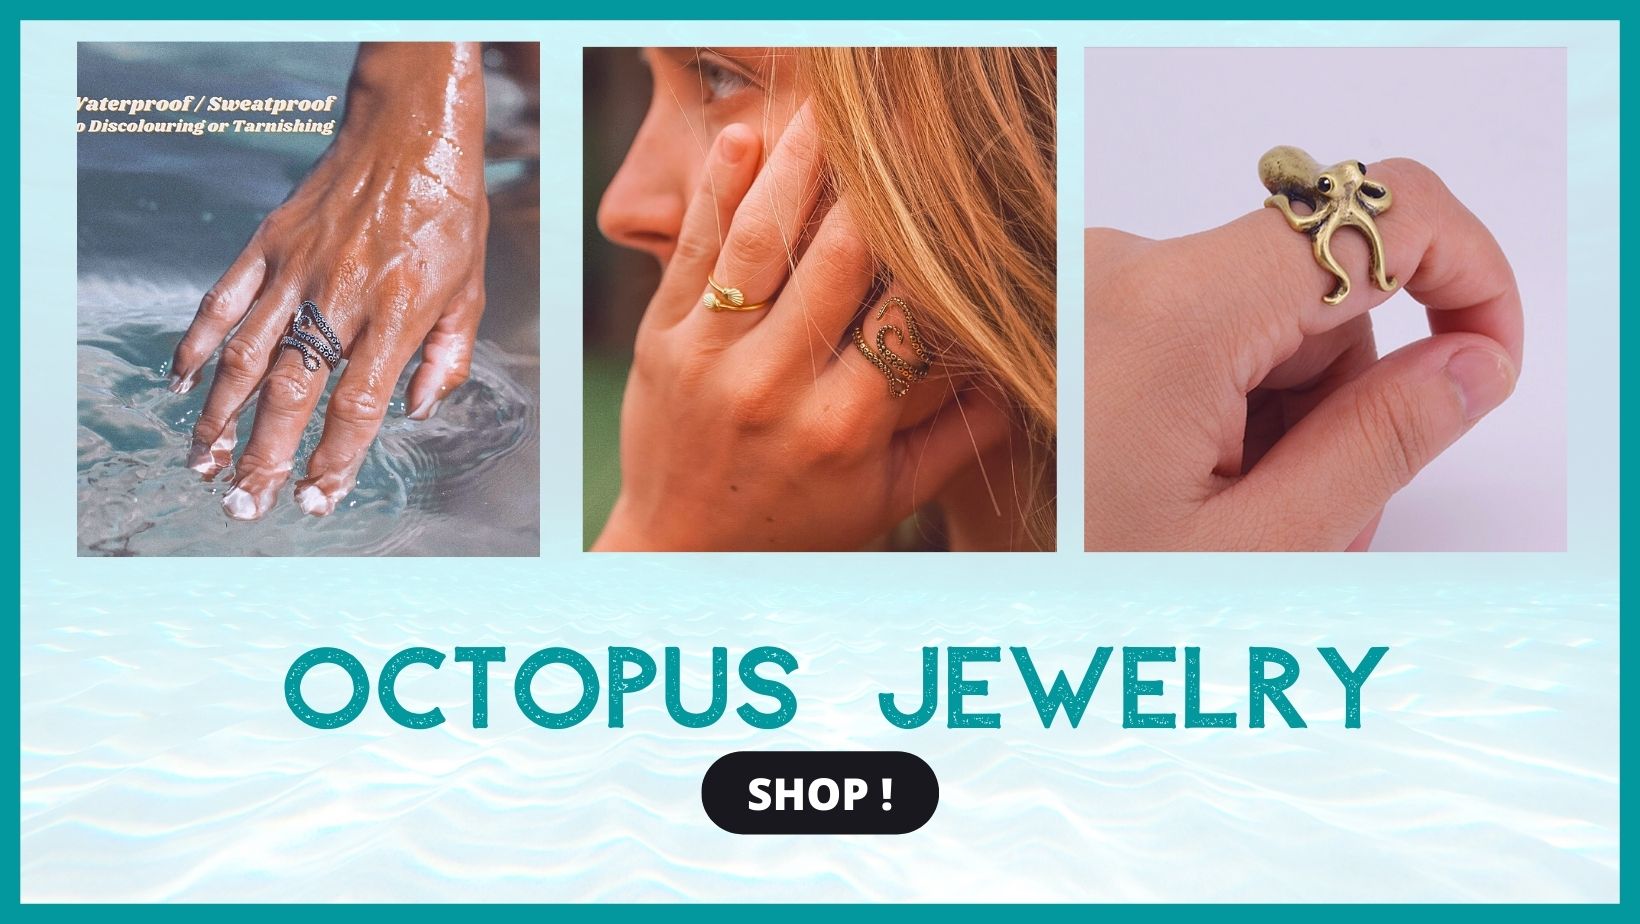 Octopus jewelry 